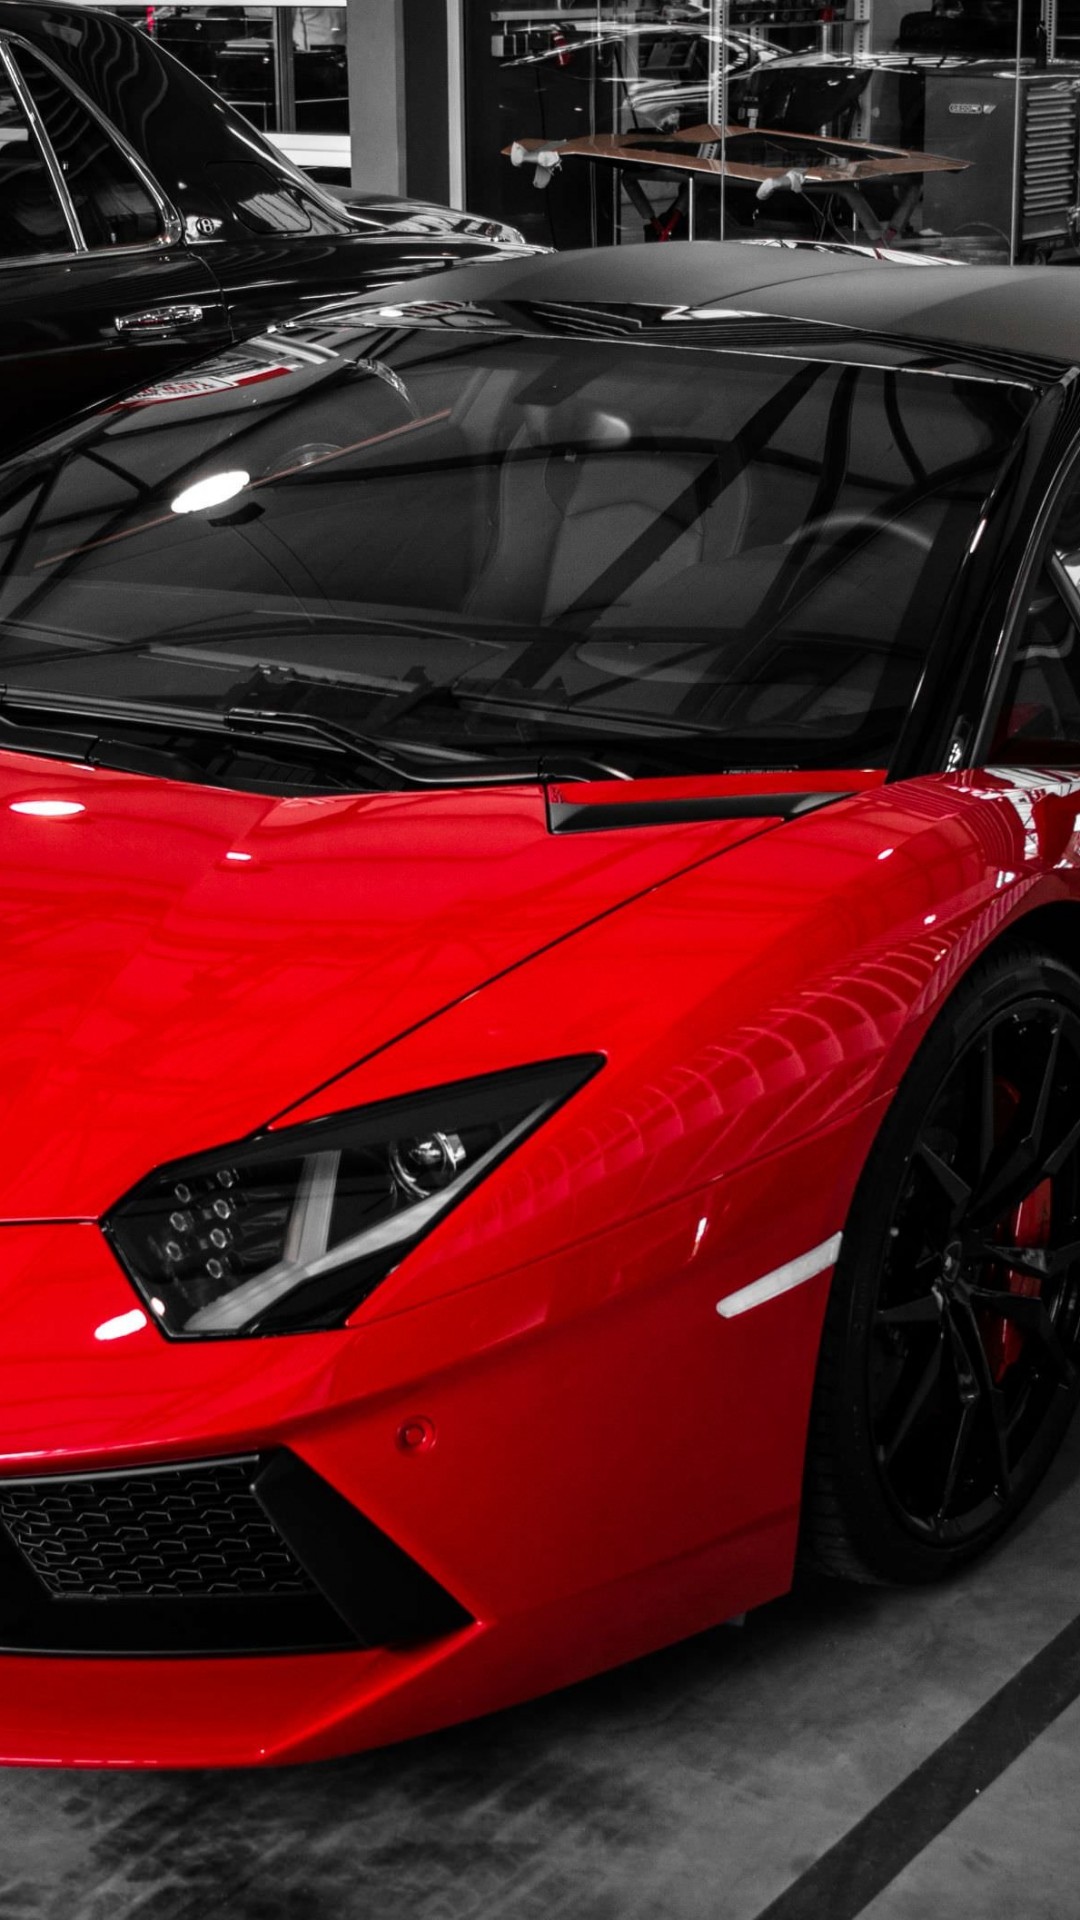 Red Lamborghini Aventador Wallpaper for HTC One